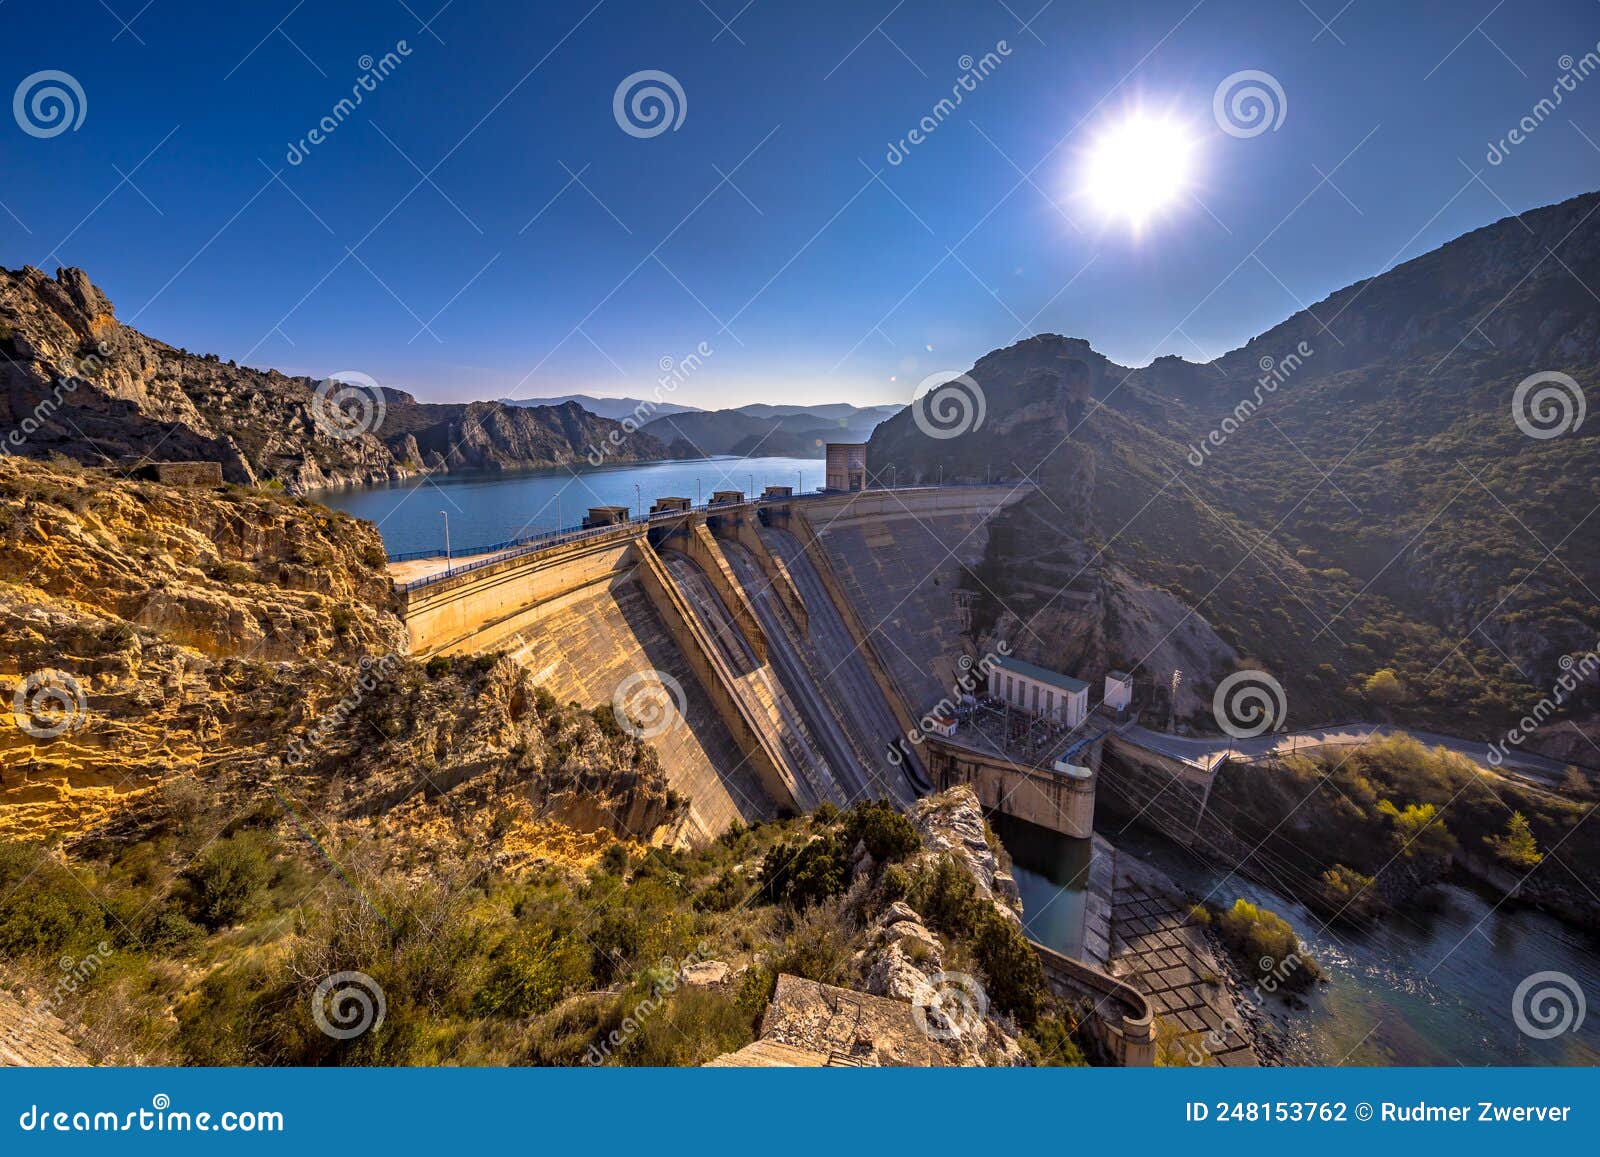 view of dam at embalse de santa ana